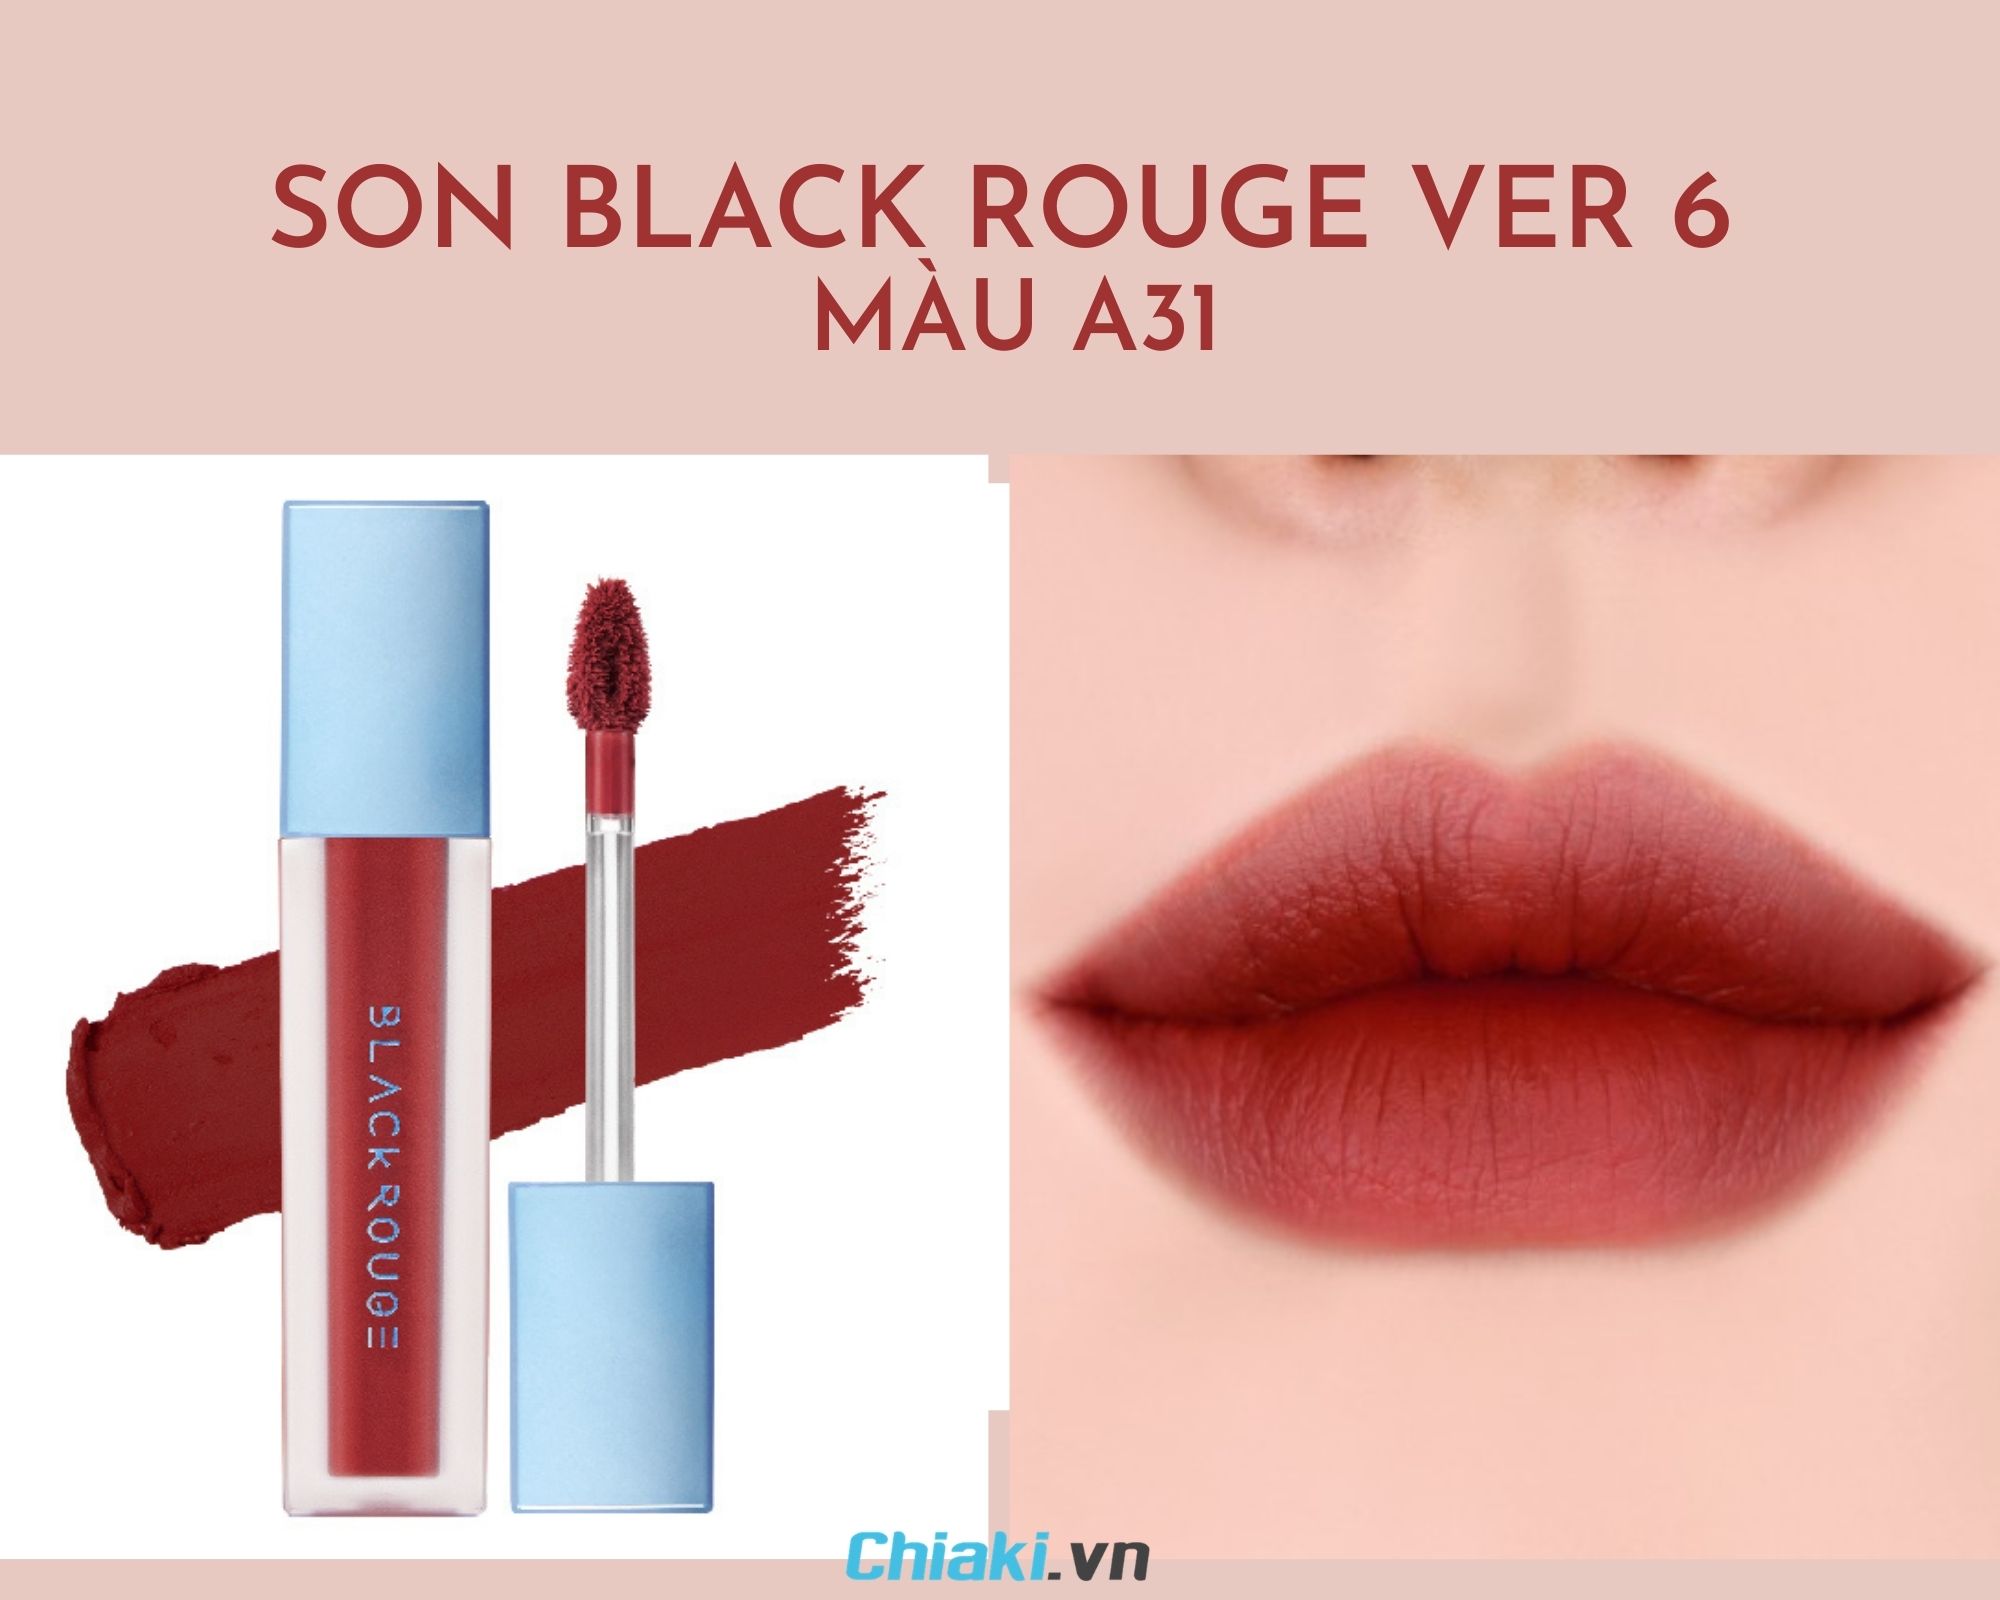 Son môi Black Rouge Air Fit Velvet Tint Ver 6 màu đỏ